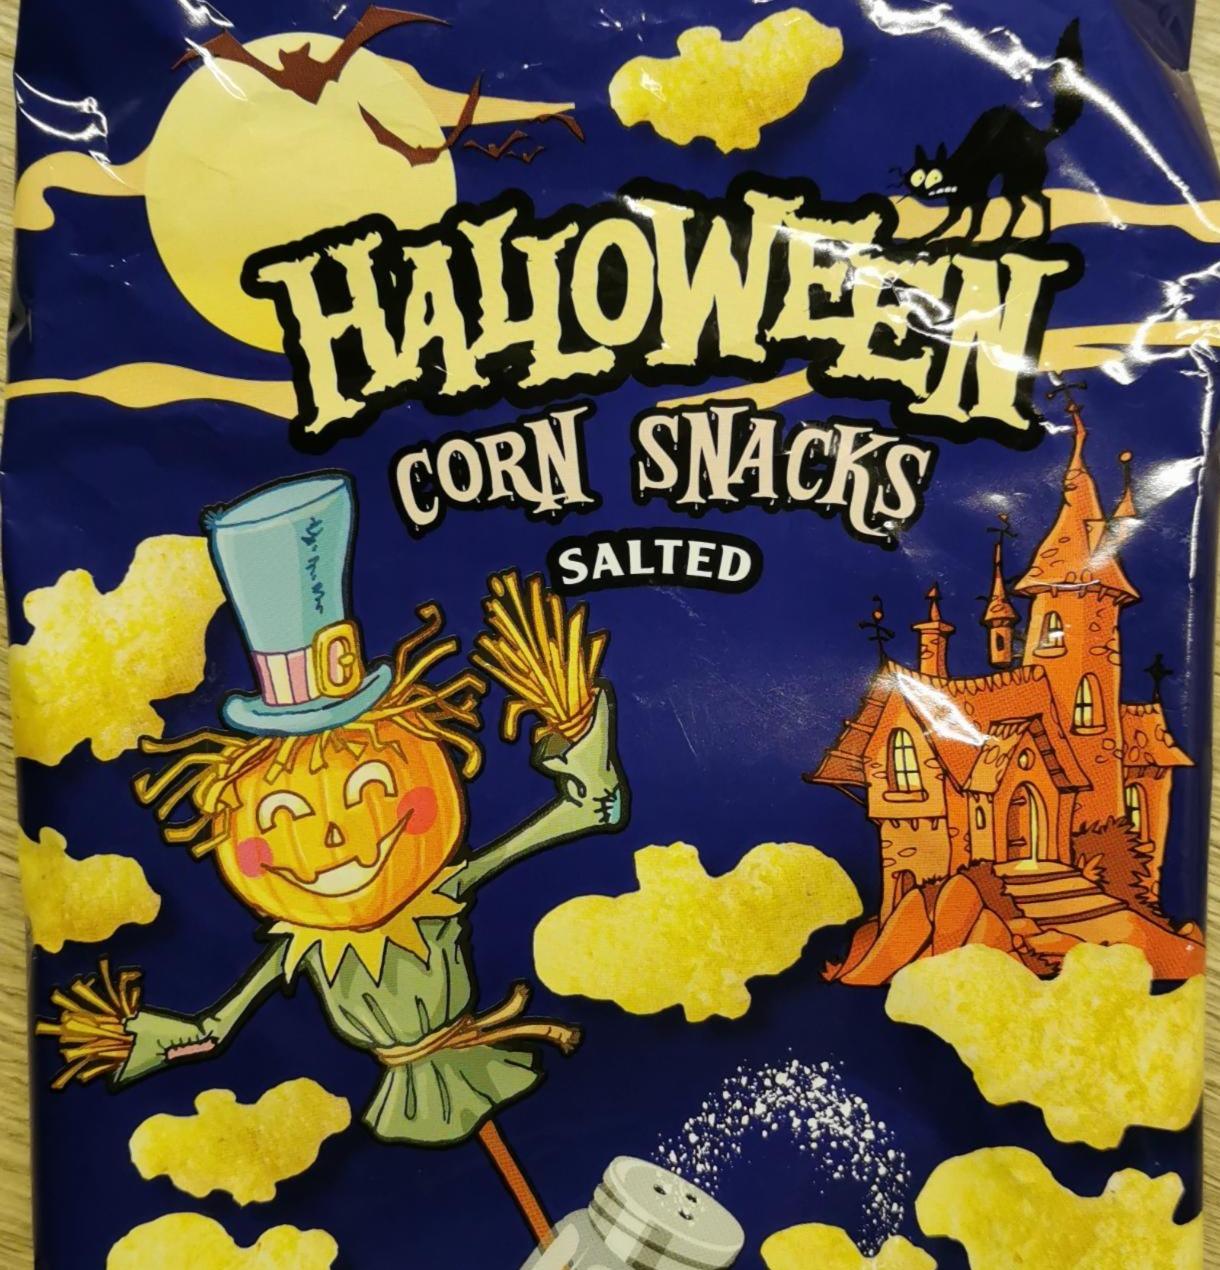 Fotografie - Halloween Corn Snacks Salted